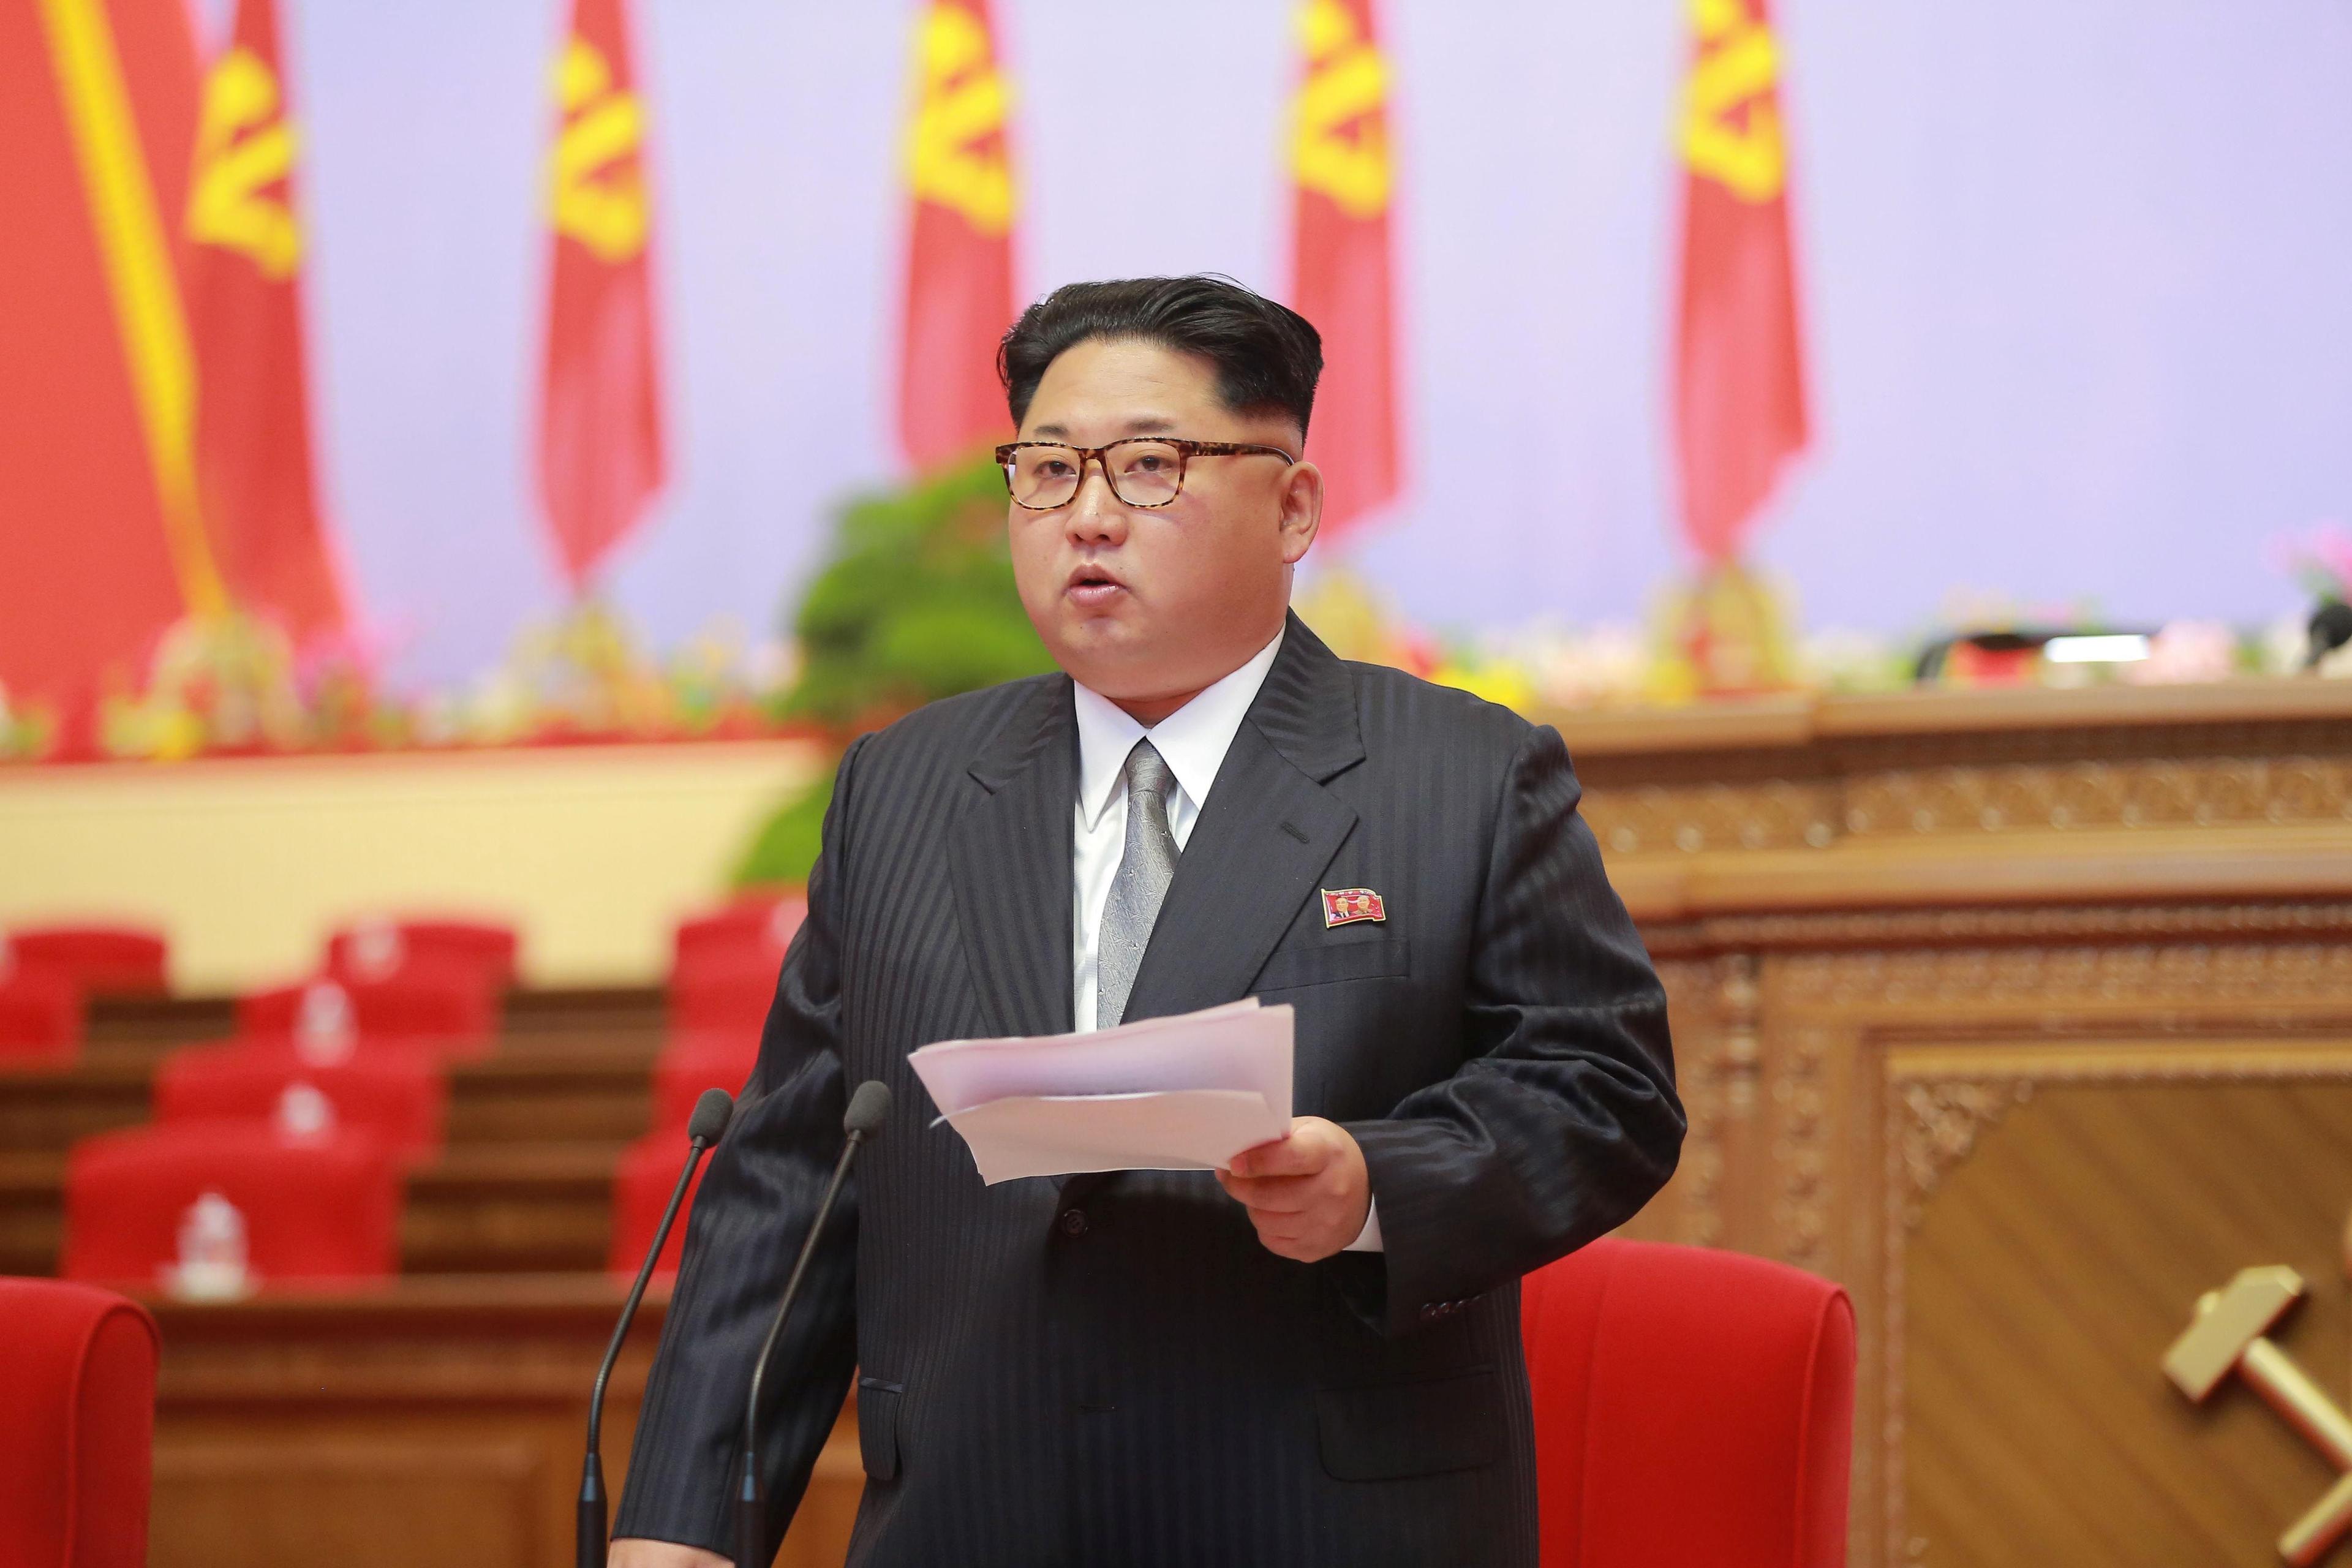 Sjeverna Koreja izvijestila o "prvom slučaju" koronavirusa: Kim Jong-un proglasio vanredno stanje u jedom području